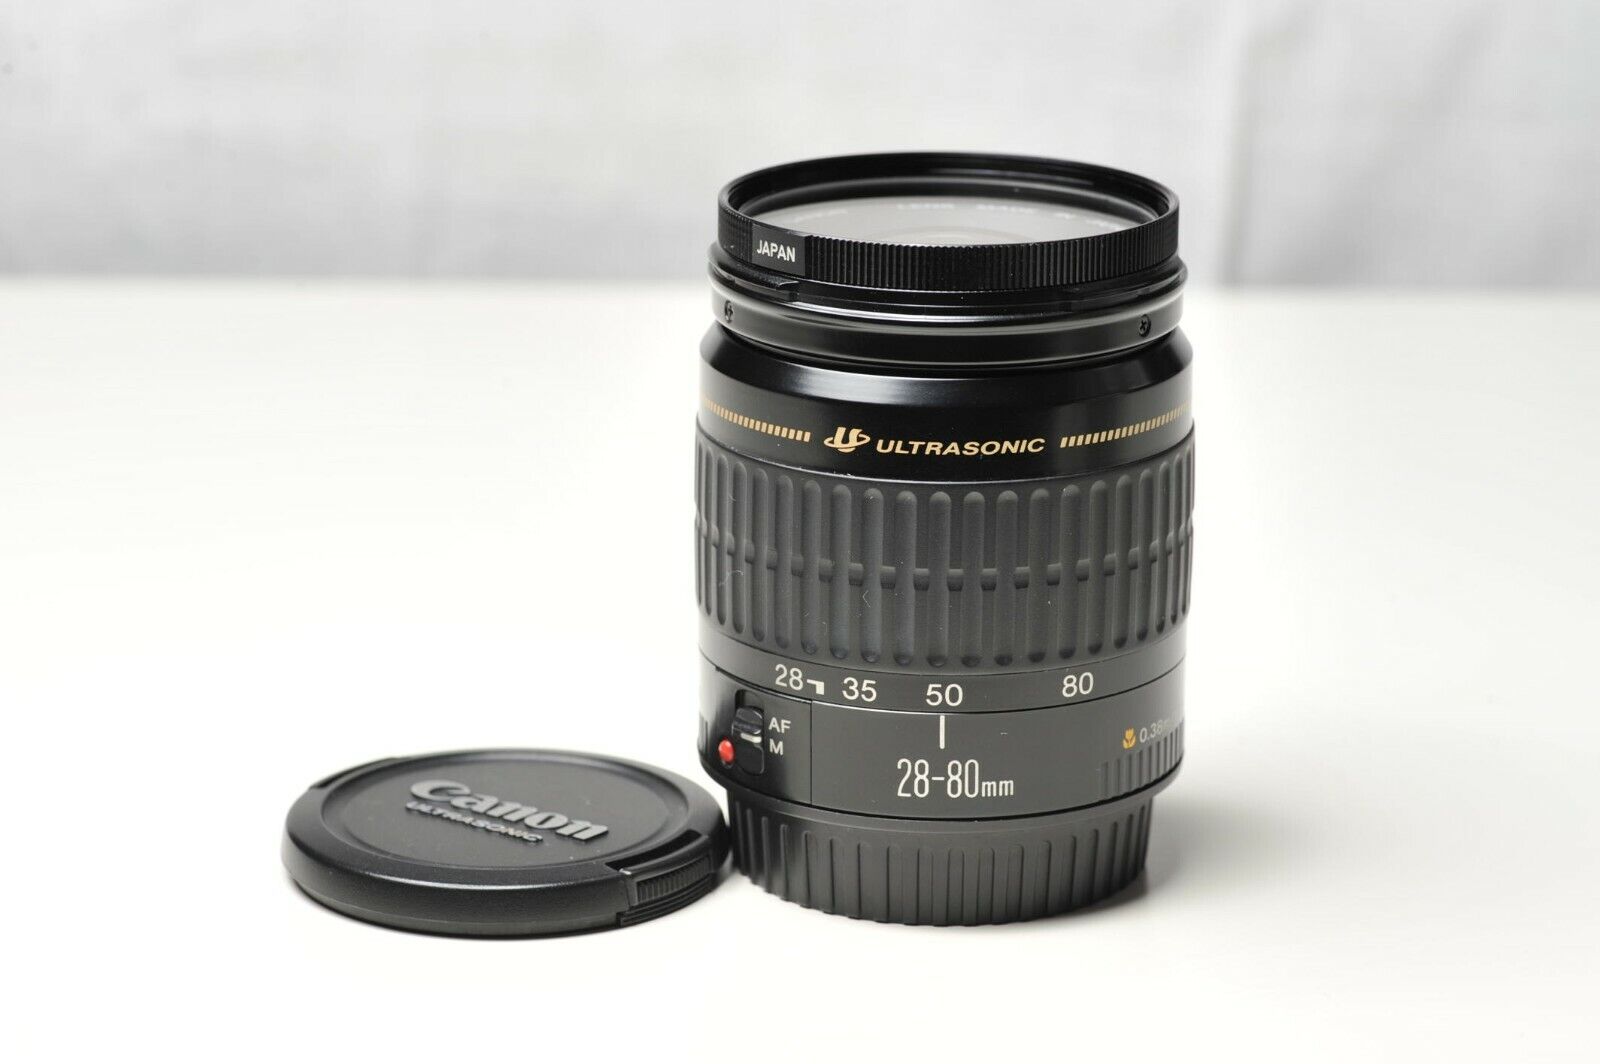 Canon EF 28-80mm f/3.5-5.6 II USM Lens for sale online | eBay